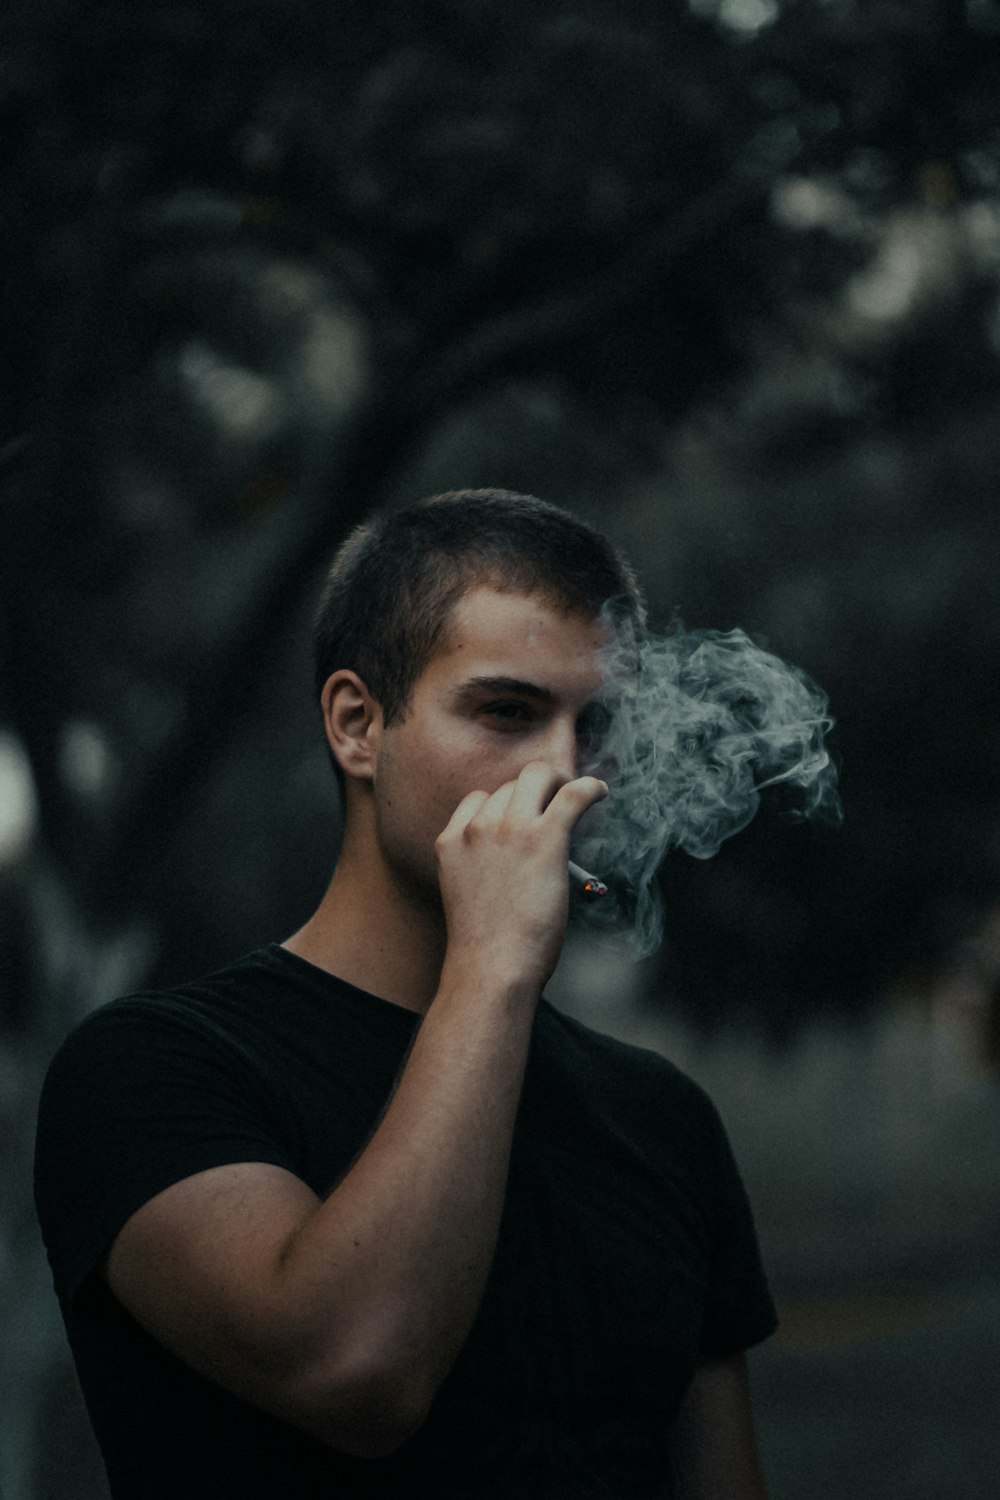 man in black crew neck t-shirt smoking